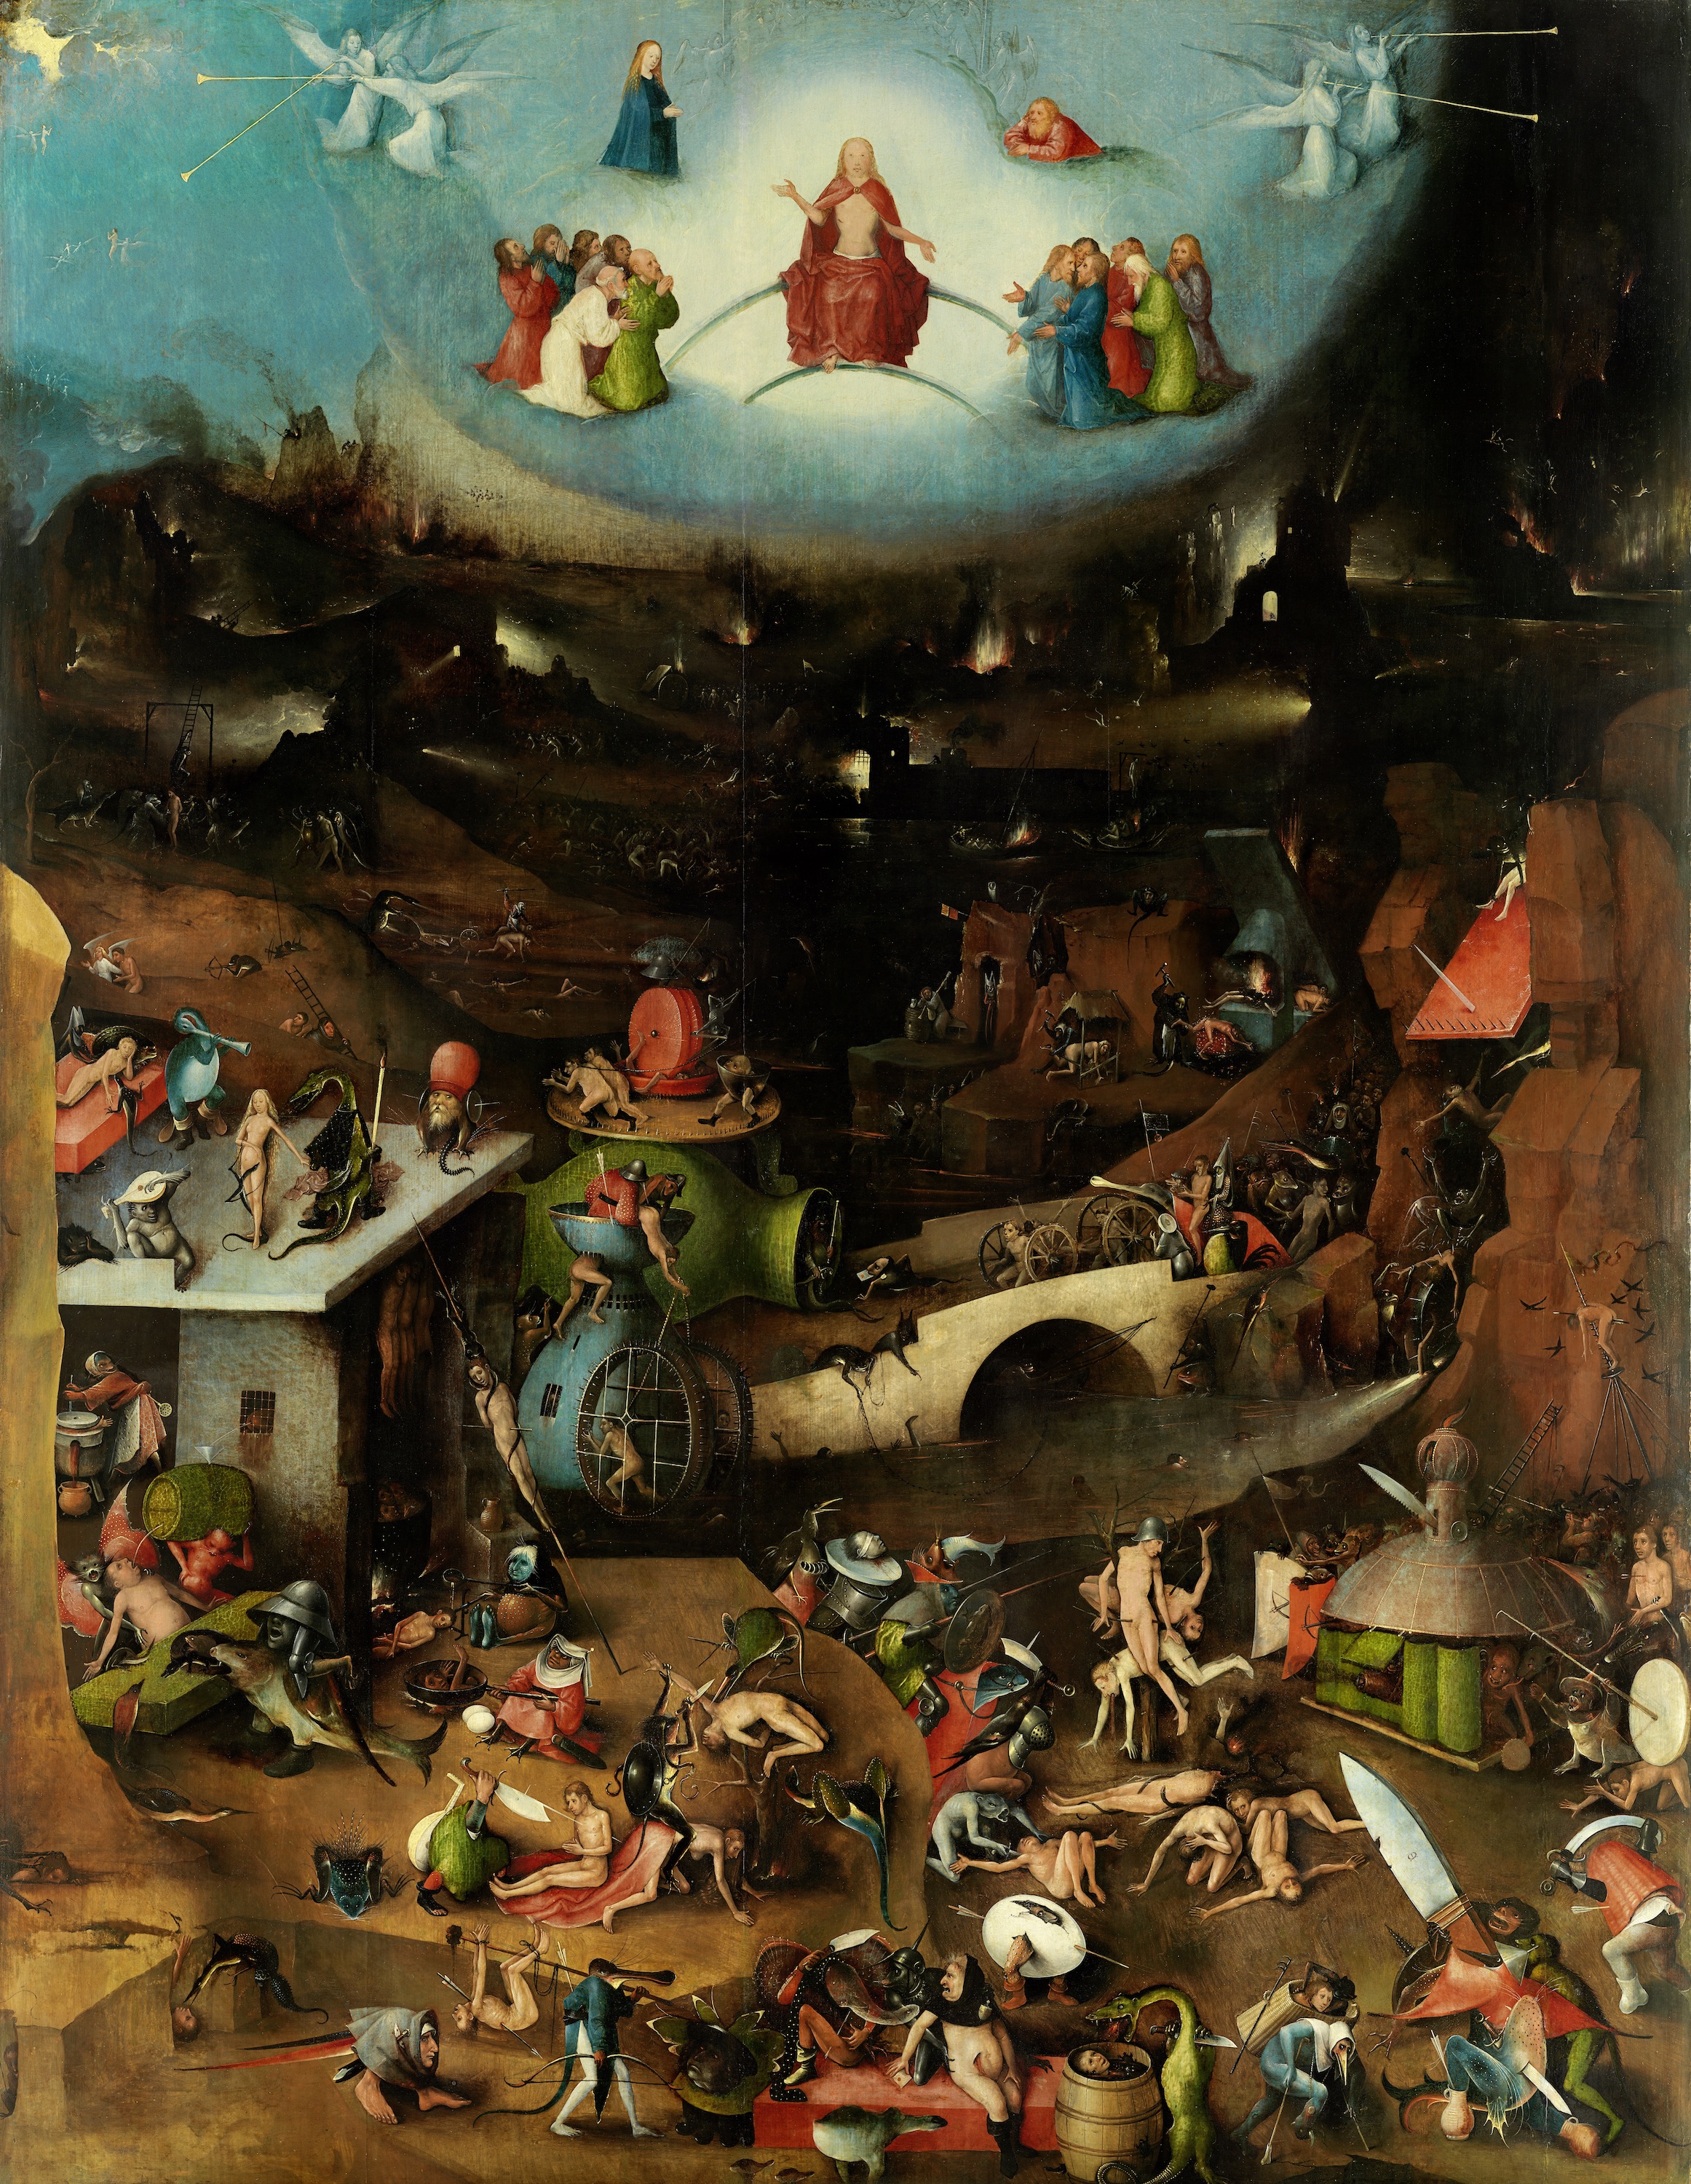 Tripticul Judecății de Apoi - panoul central by Hieronymus Bosch - cca. 1500 